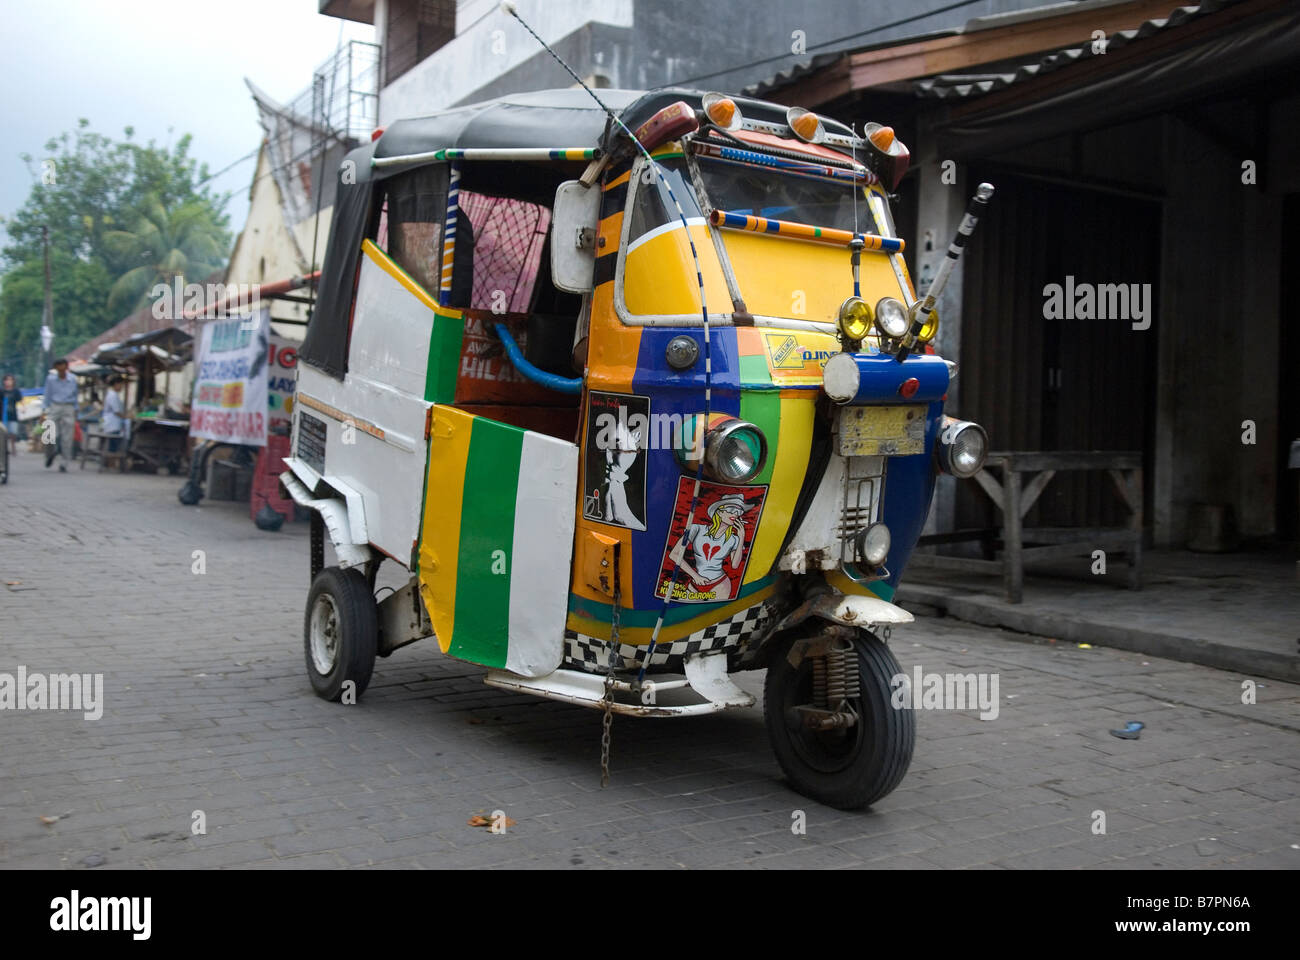 Transport de la rue dans une ruelle du quartier chinois, Jakarta Banque D'Images